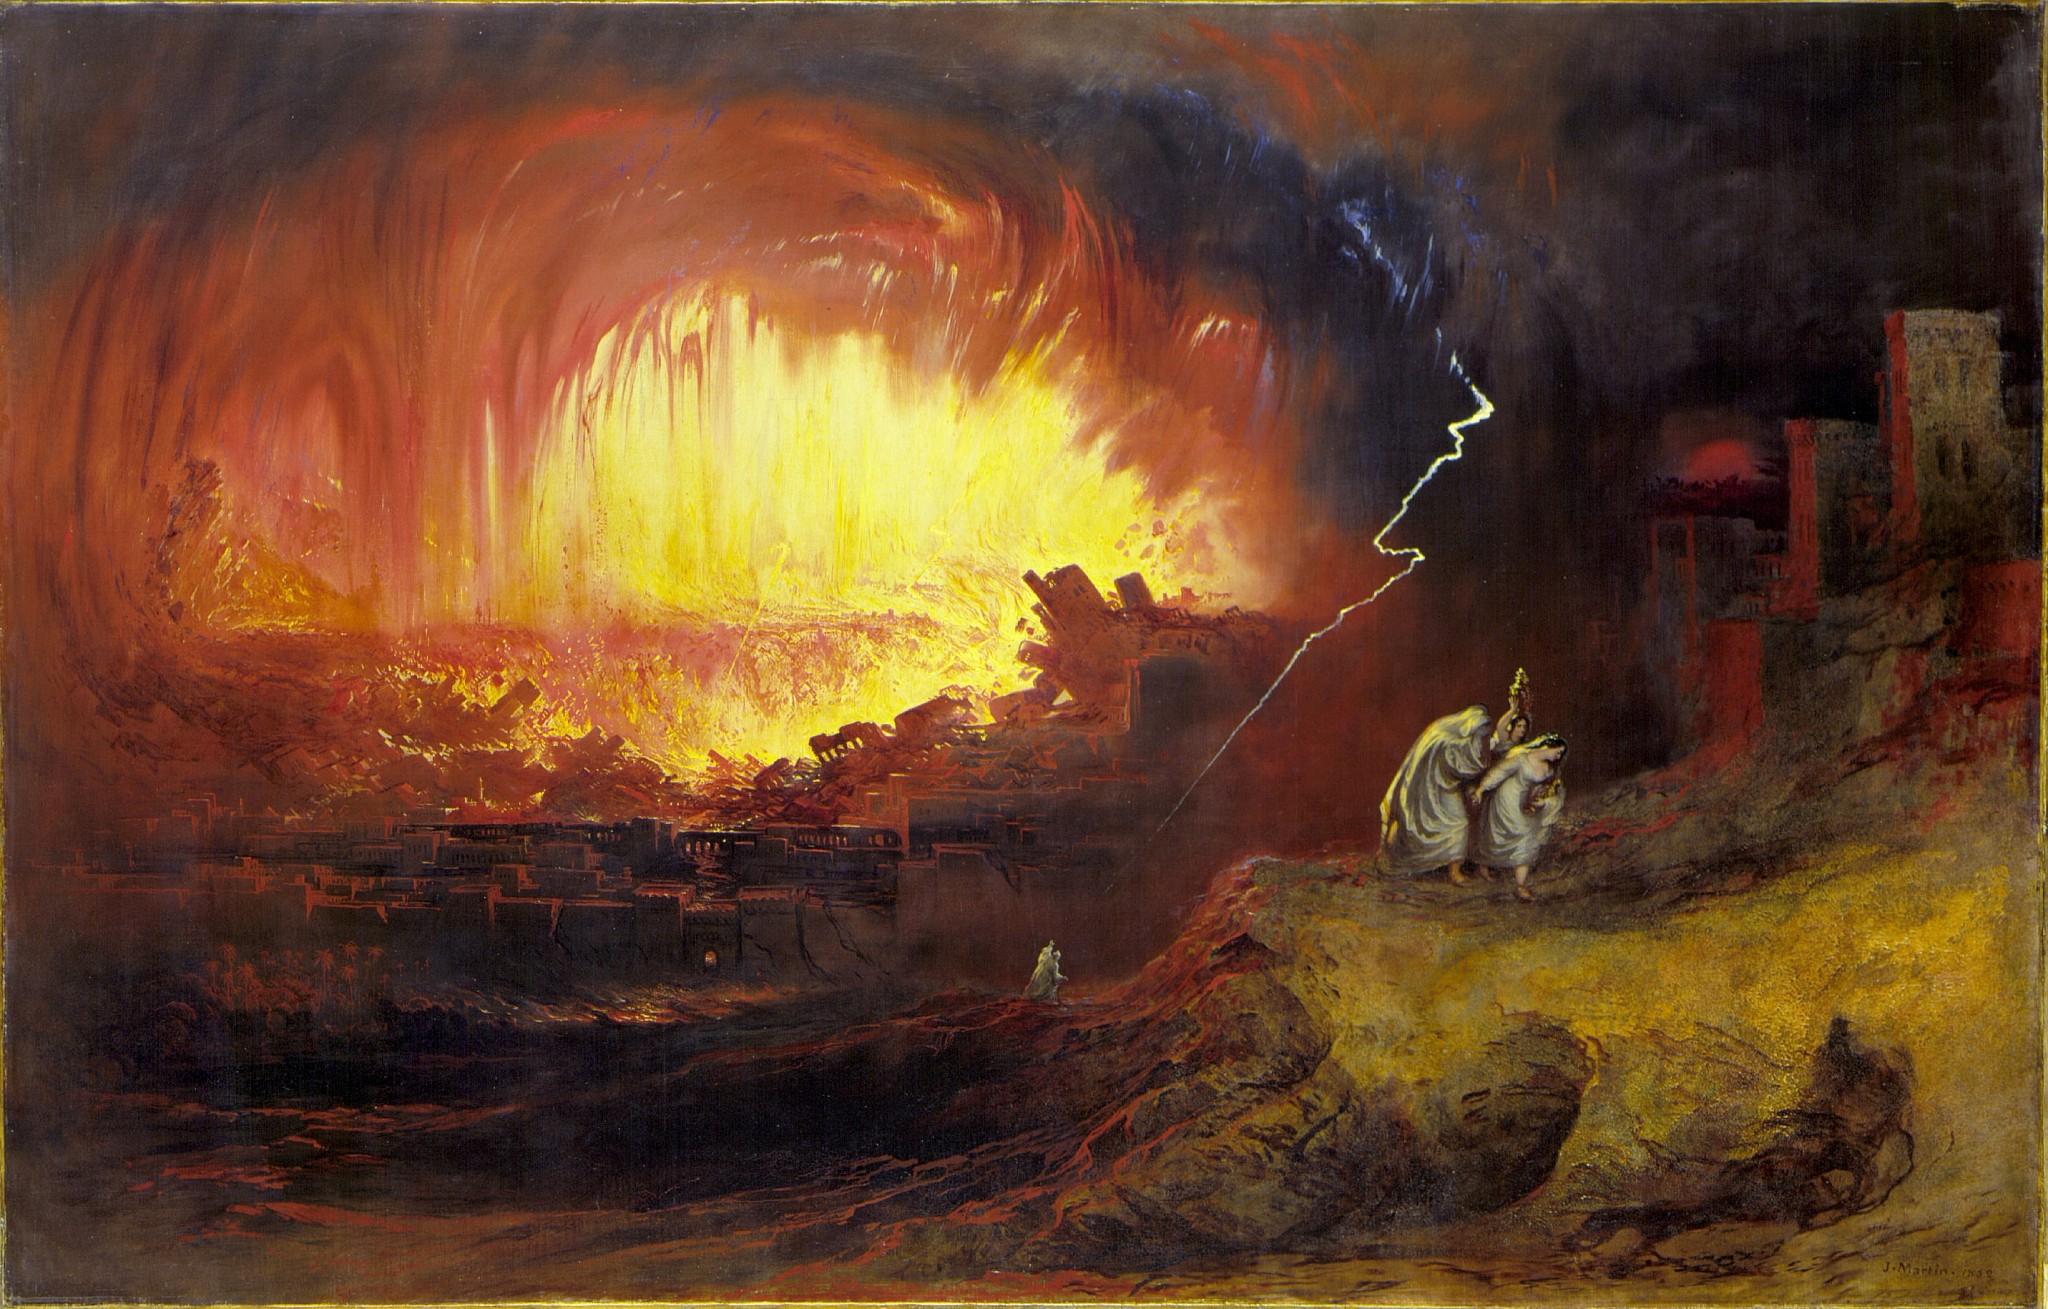 John Martin, Uništenje Sodome i Gomore, 1852. Izvor: Wikimedia Commons.